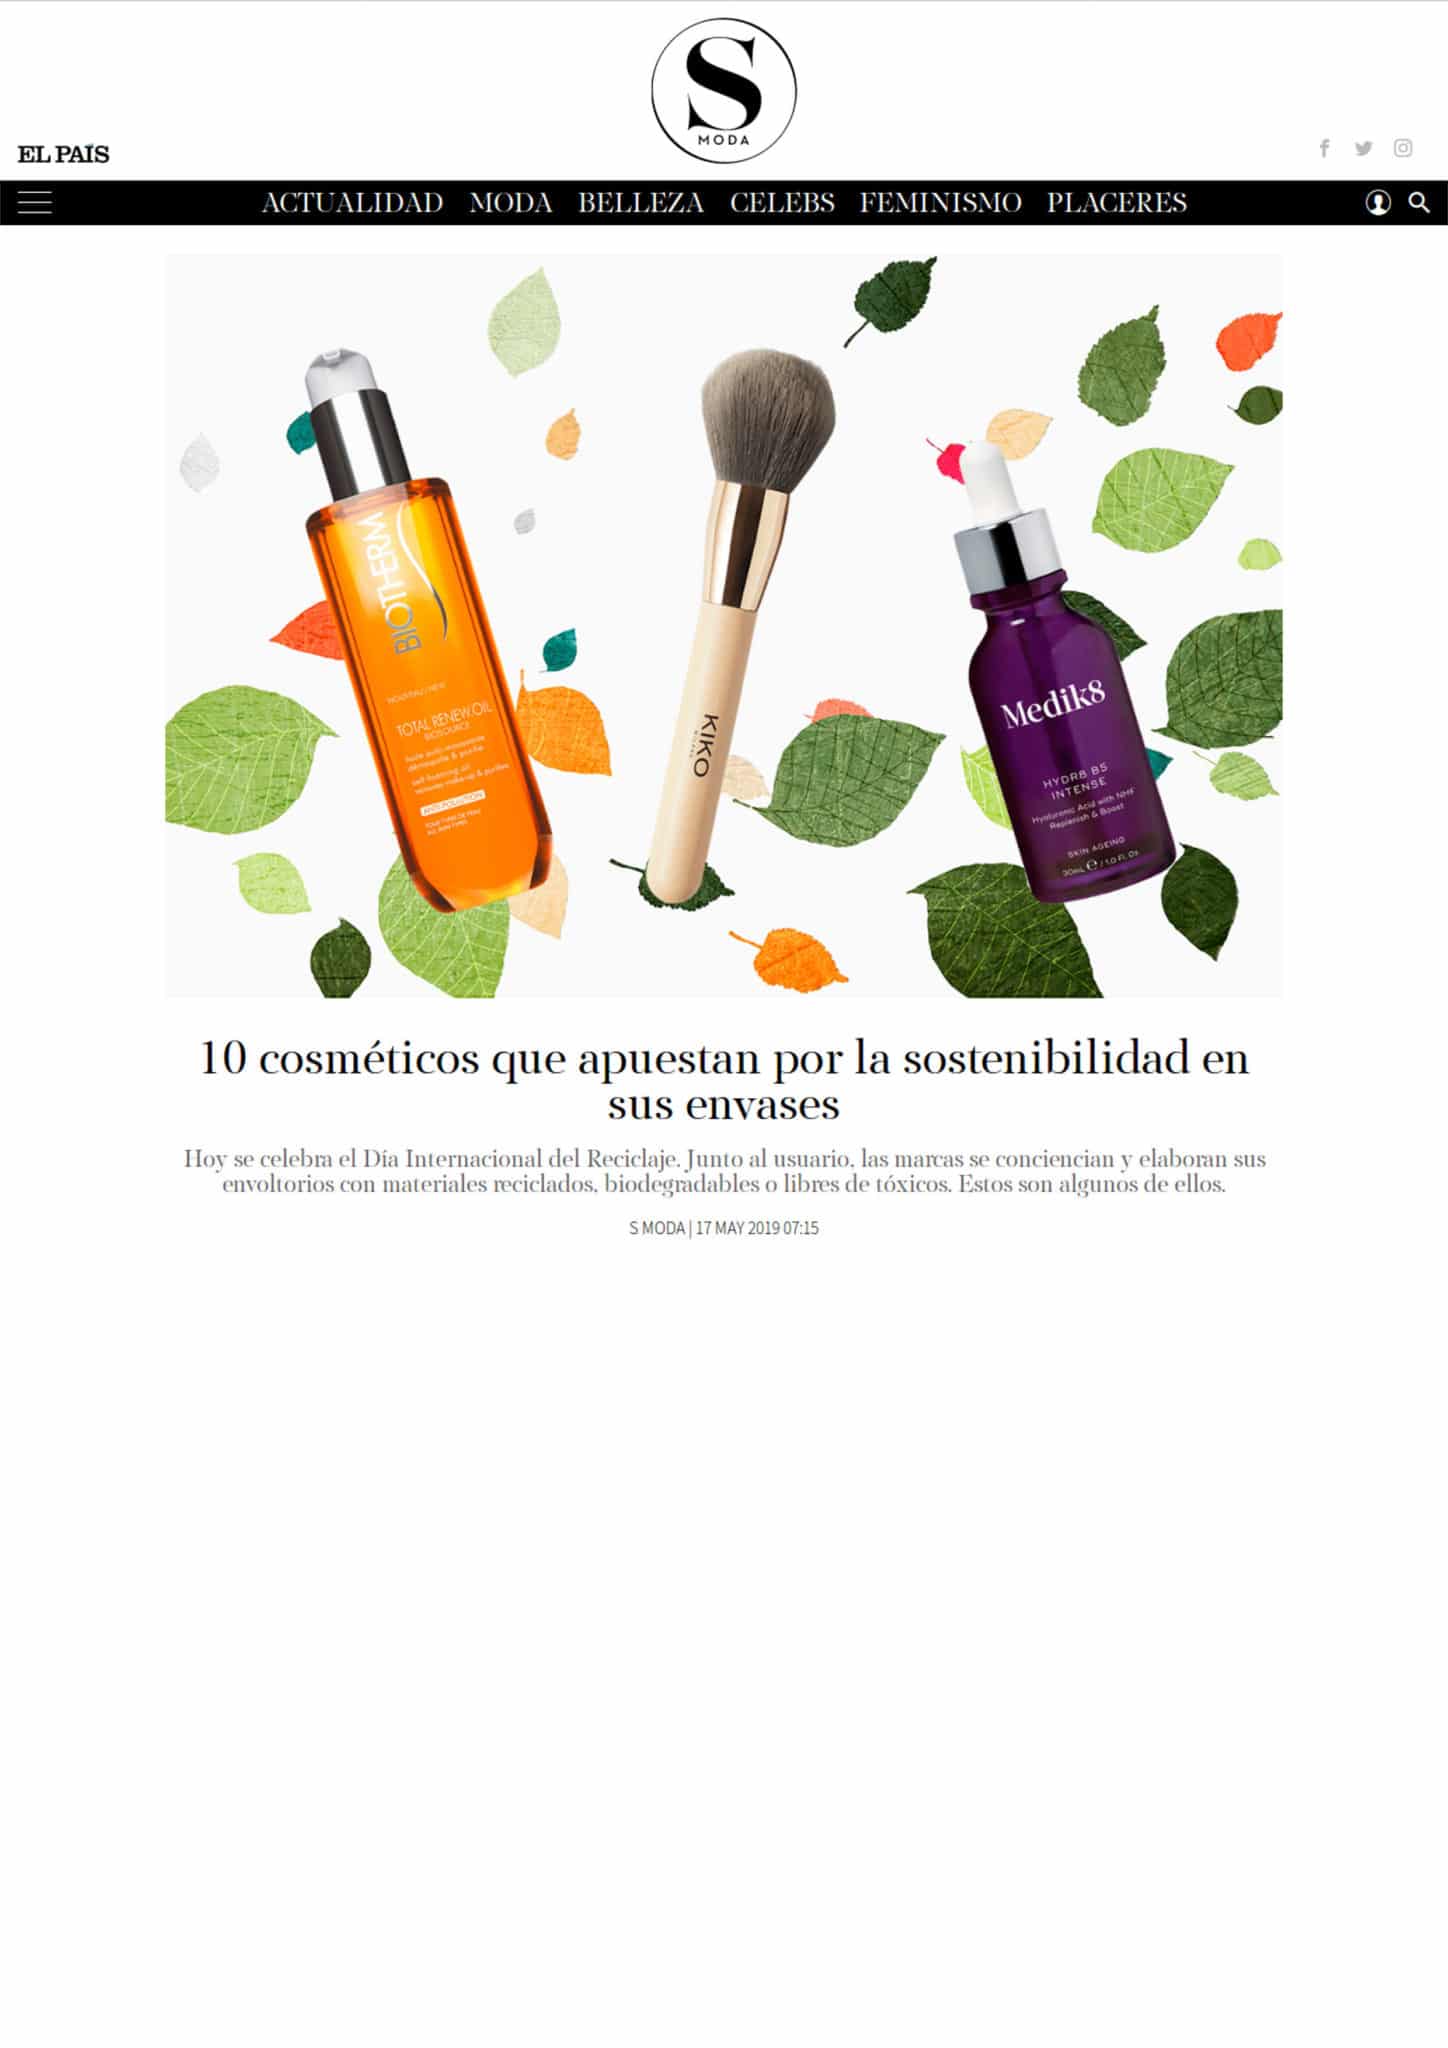 10 cosméticos que apuestan por la sostenibilidad en sus envases - 17 may 2019